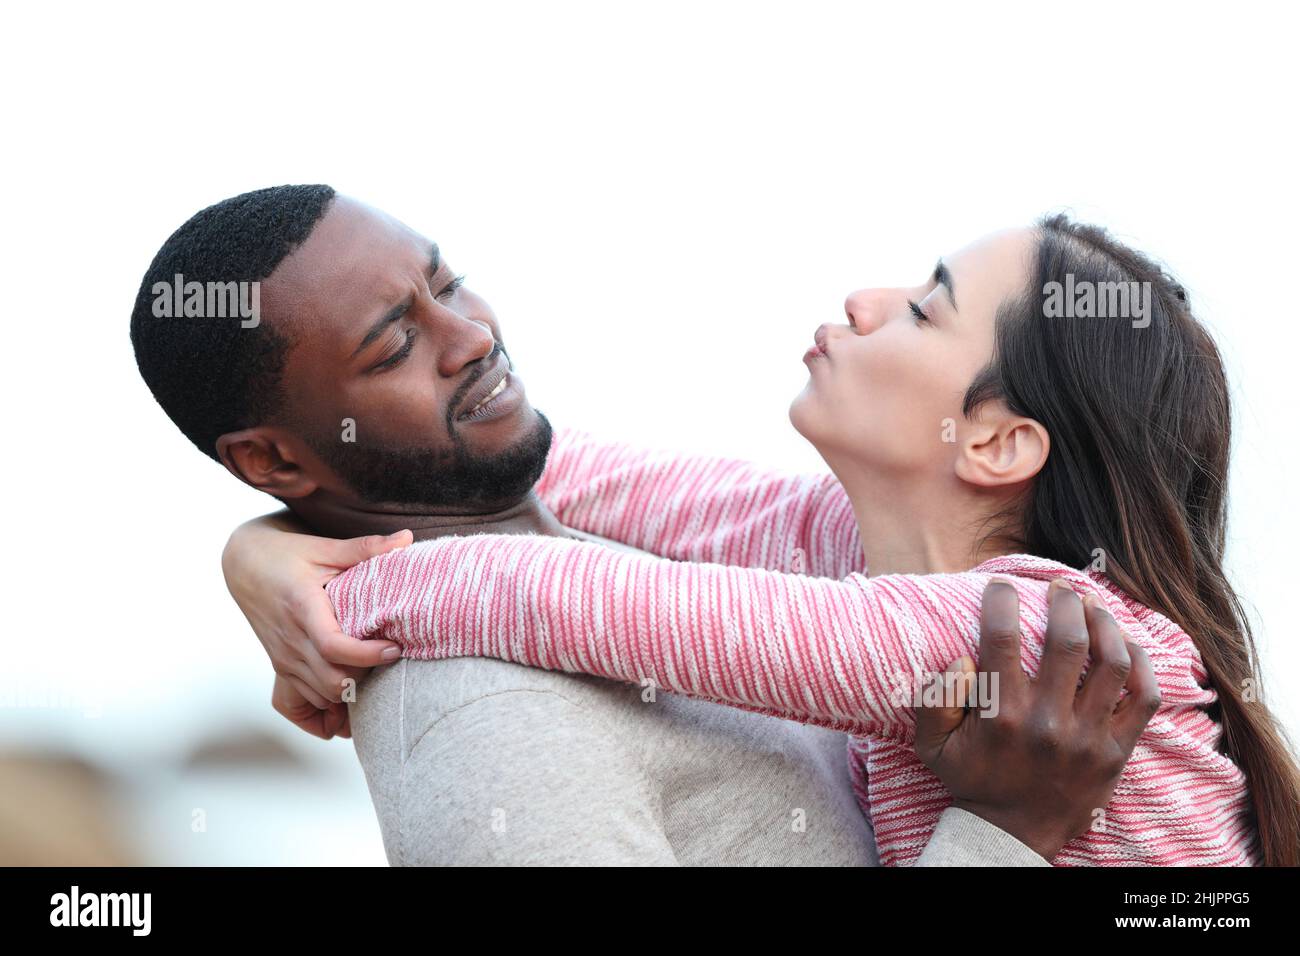 Vue latérale portrait d'une femme essayant d'embrasser un homme qui la tire Banque D'Images